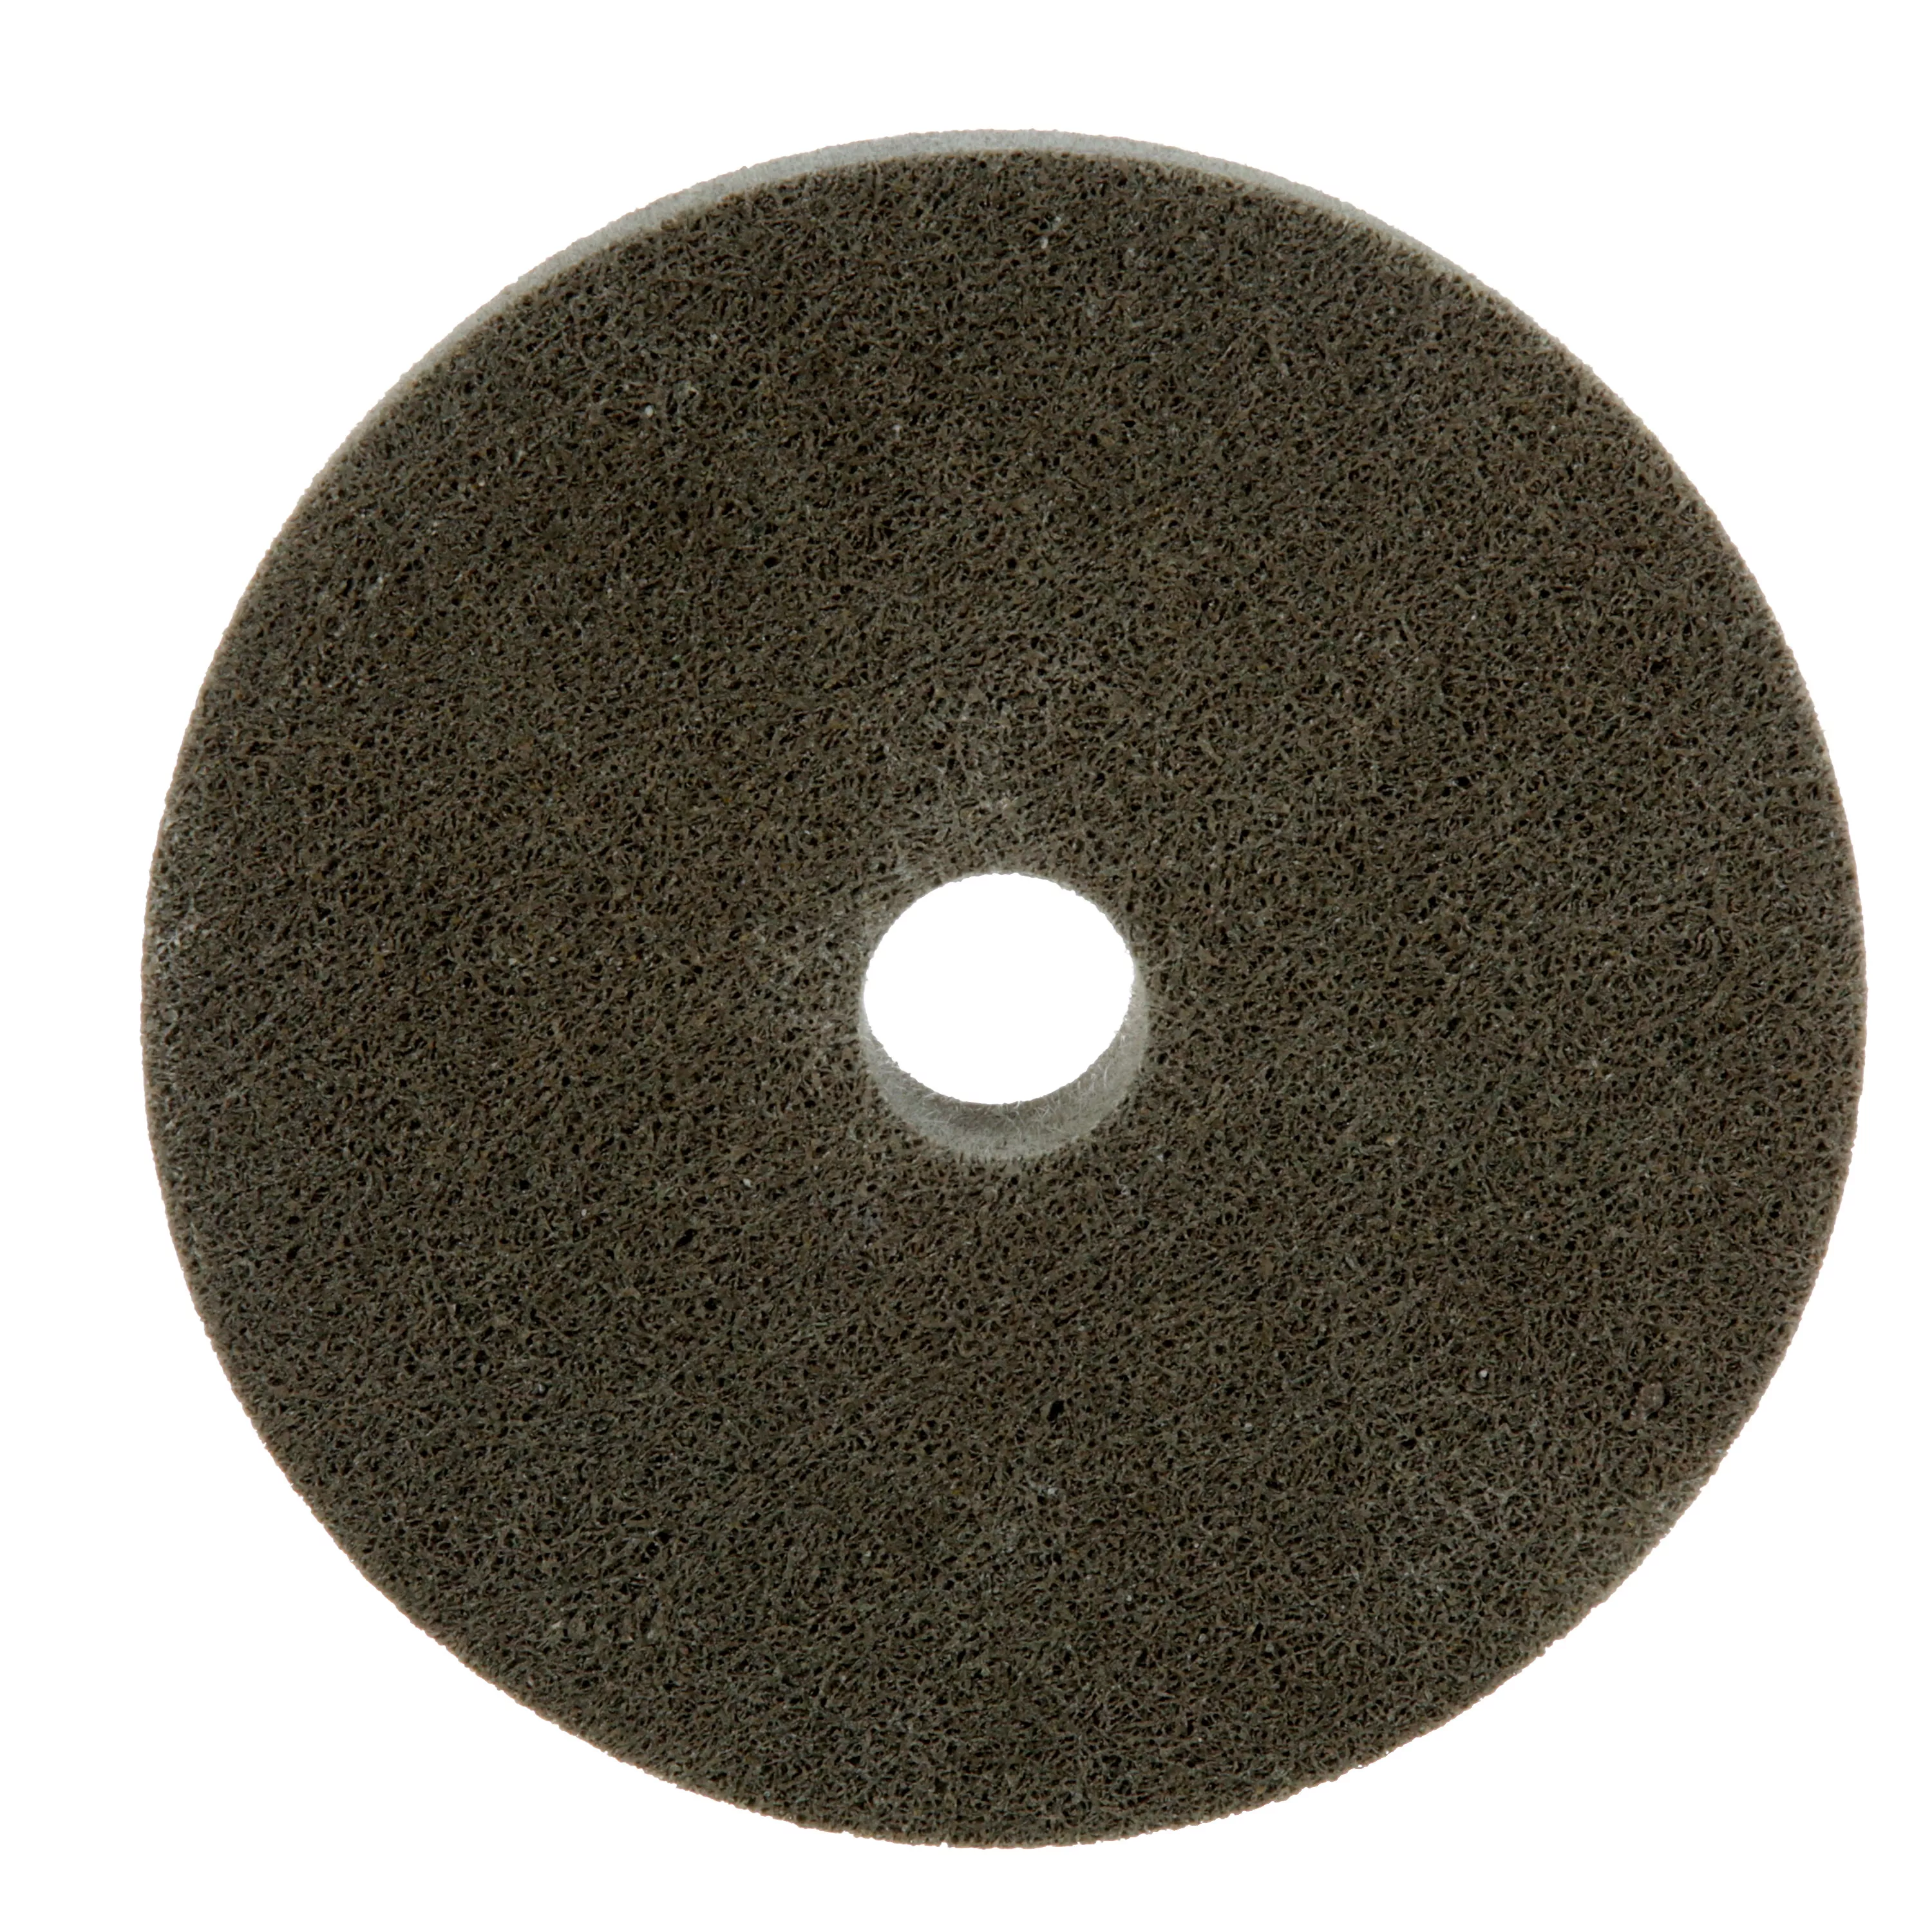 Standard Abrasives™ A/O Unitized Wheel 882175, 821 6 in x 1/2 in x 1 in,
4 ea/Case